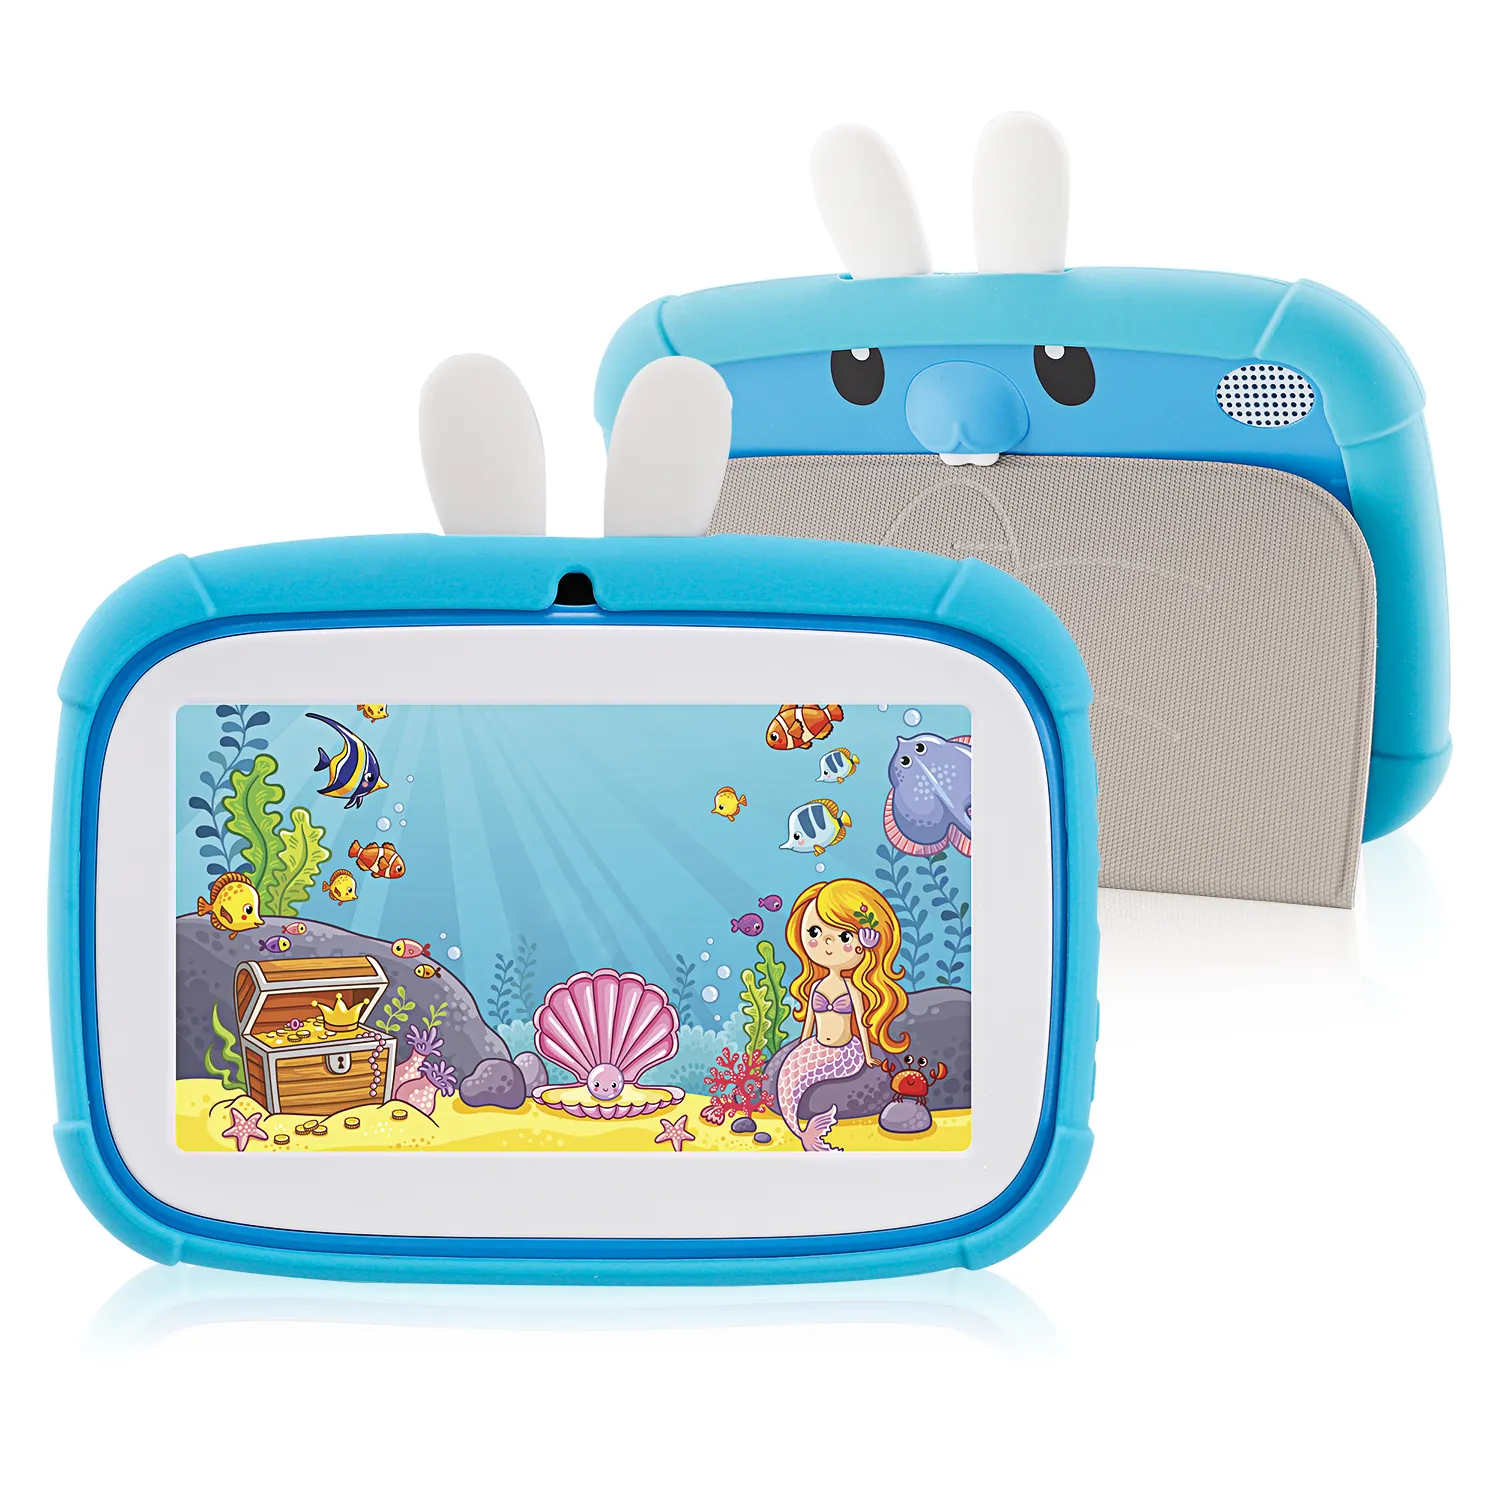 Supporto Veidoo WIFI/BT/Record/Software personalizzato 32G ROM Tablet educazione per bambini Tablet Pc Android da 7 pollici per bambini